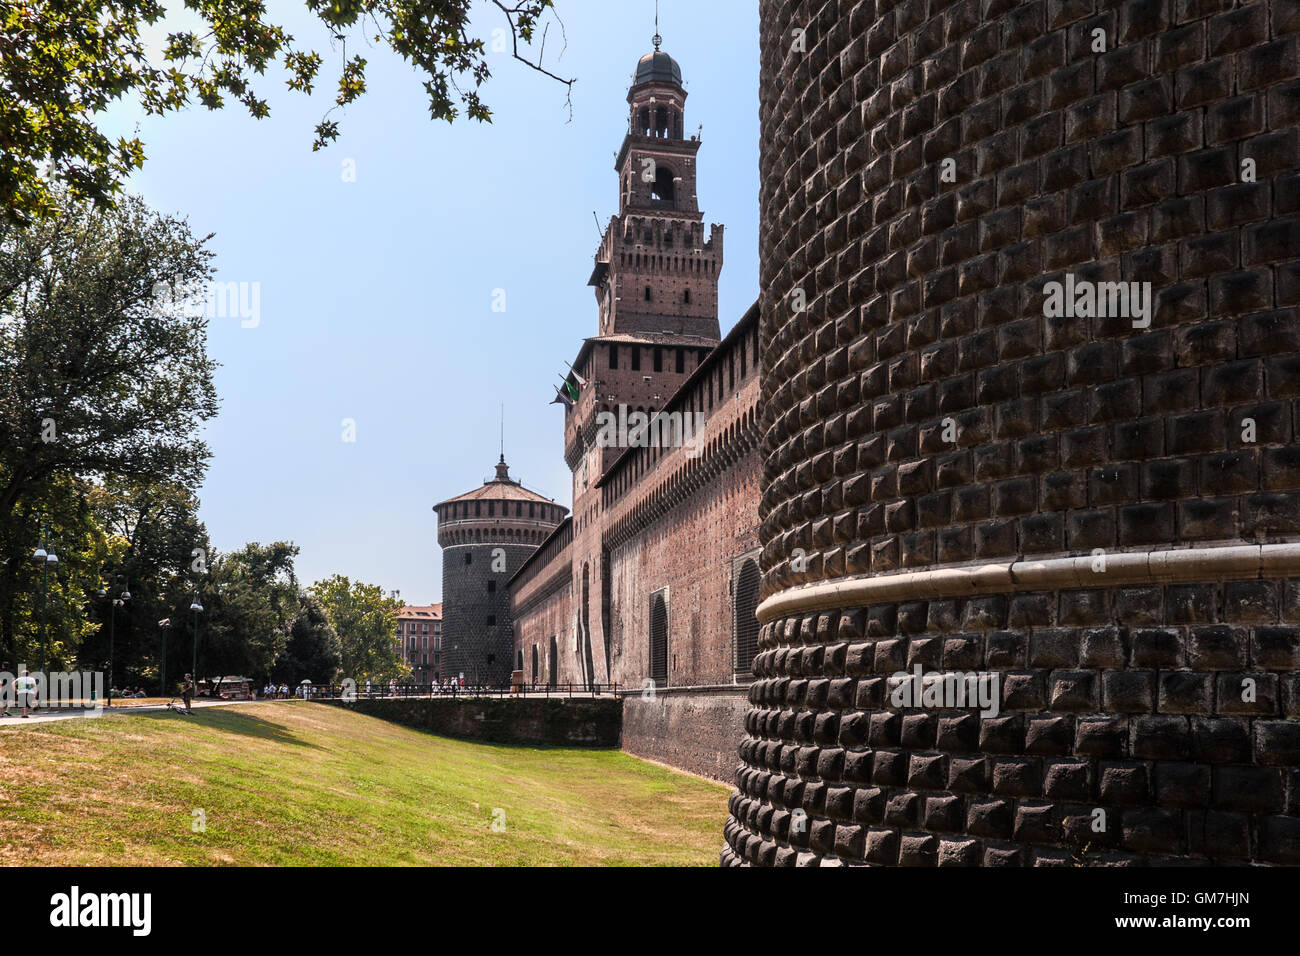 Castello Sforzesco, Milan Stock Photo